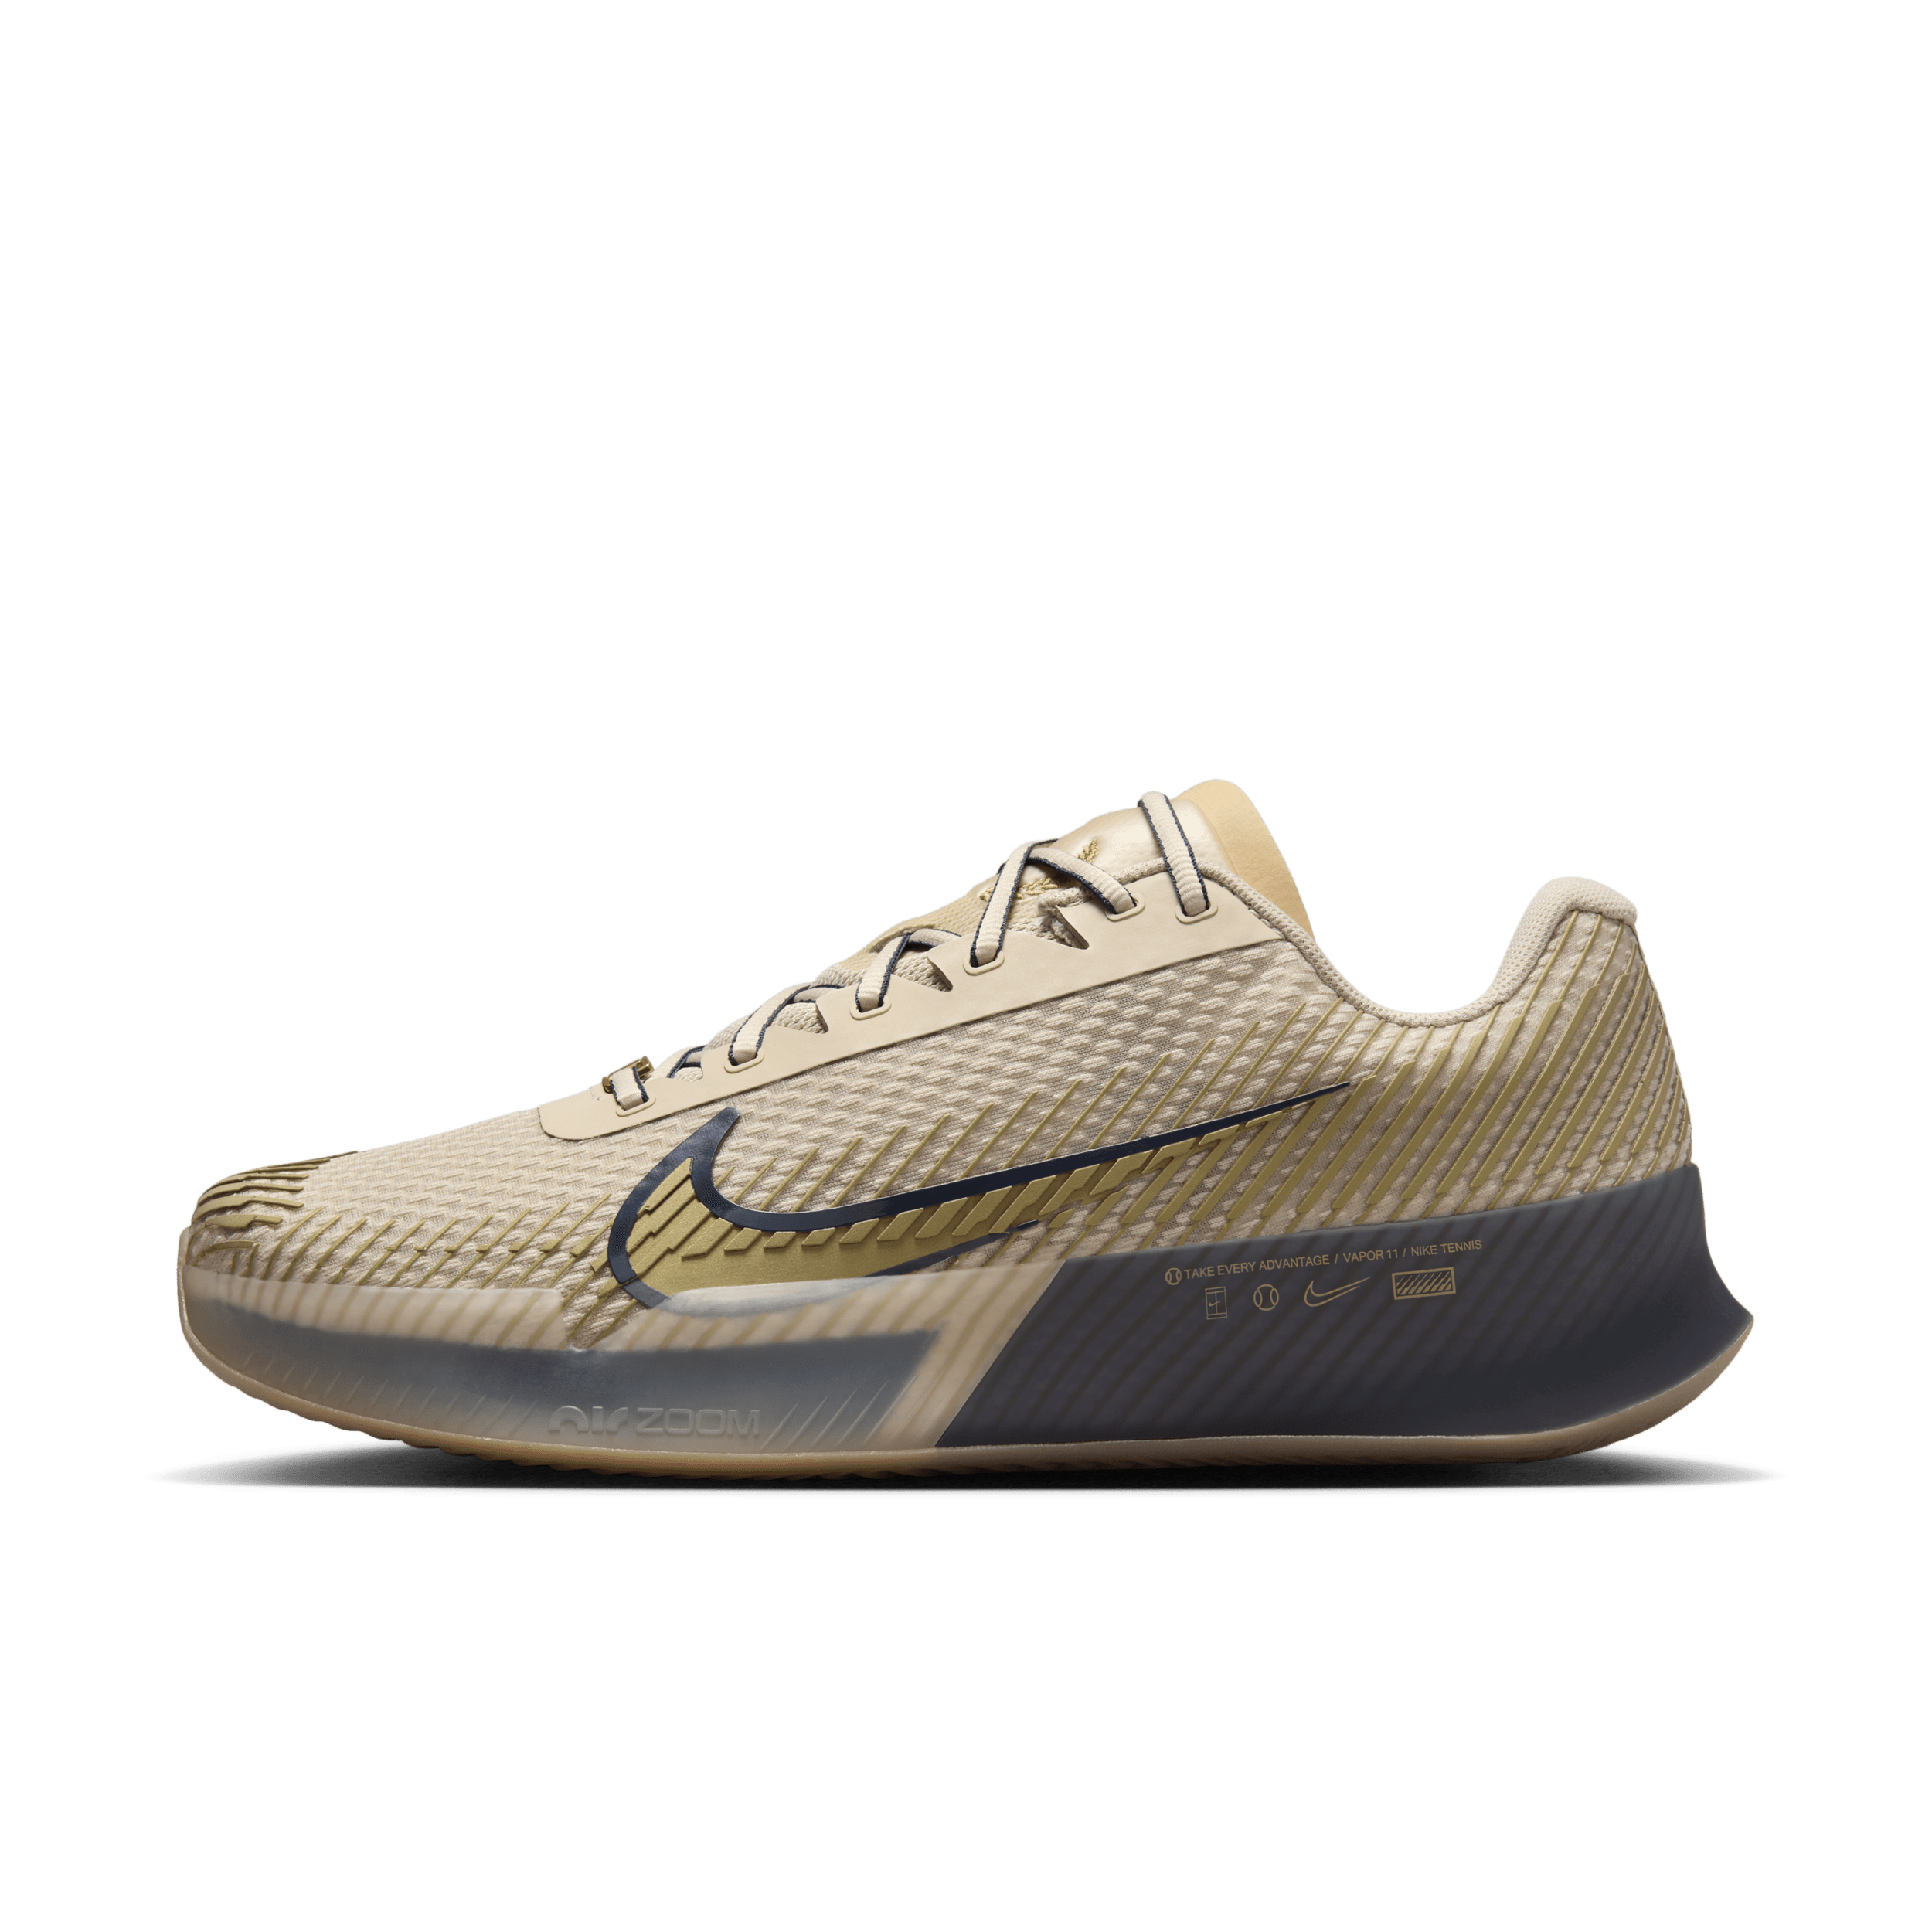 NikeCourt Air Zoom Vapor 11 Premium tennisschoenen voor heren (gravel) - Bruin